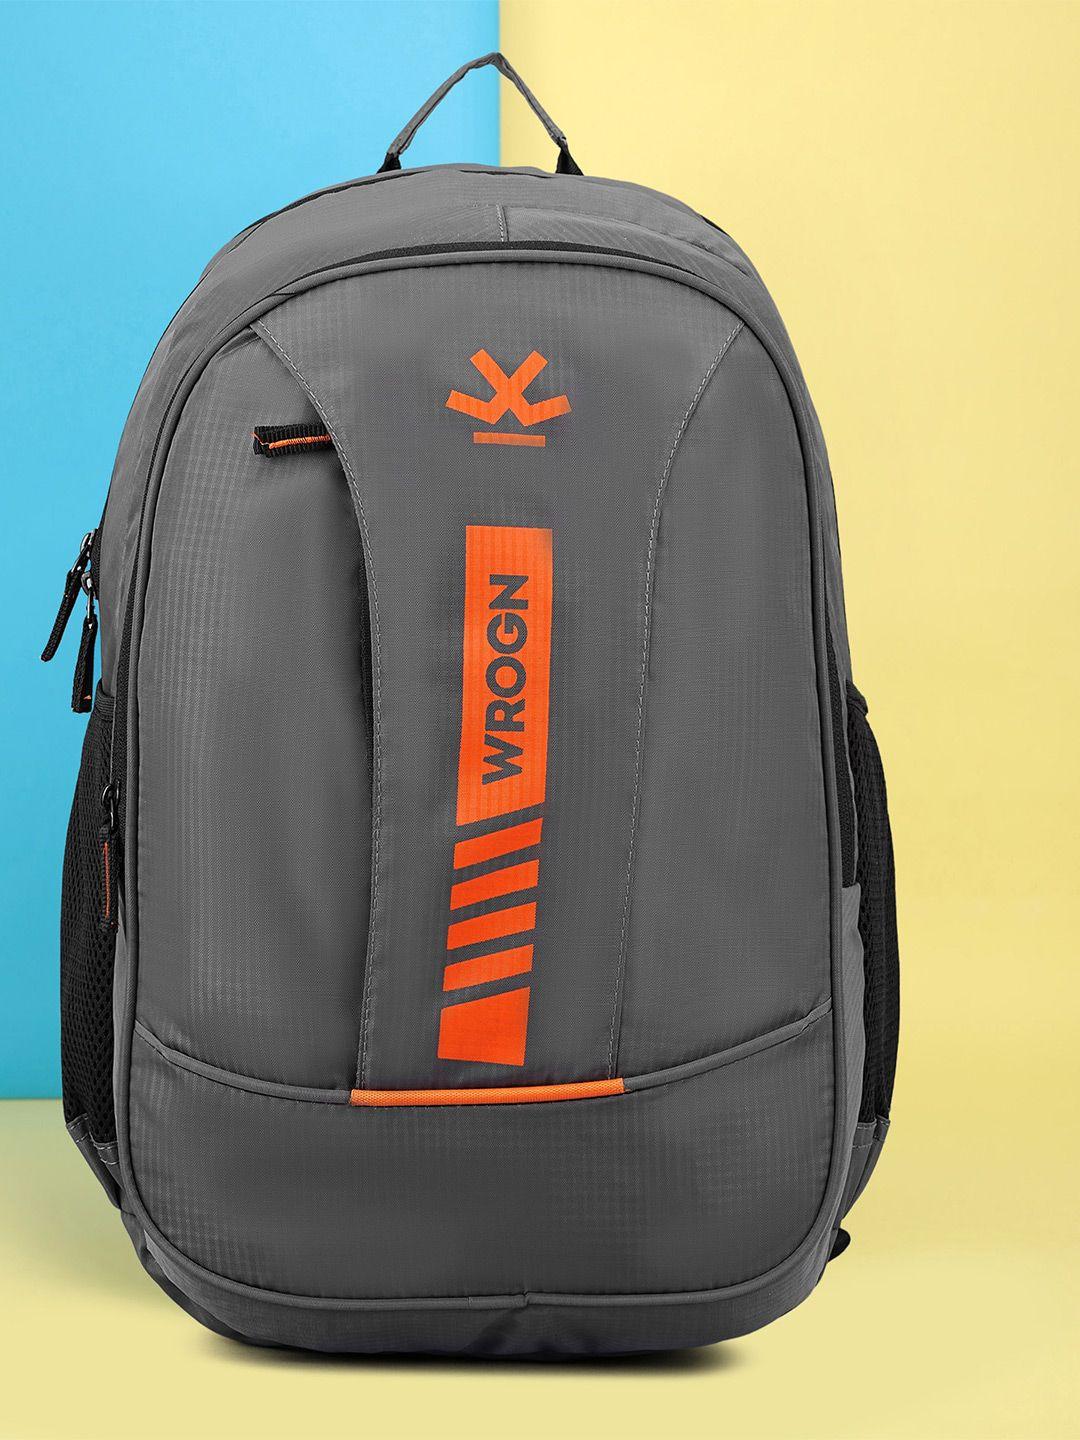 wrogn printed laptop backpack